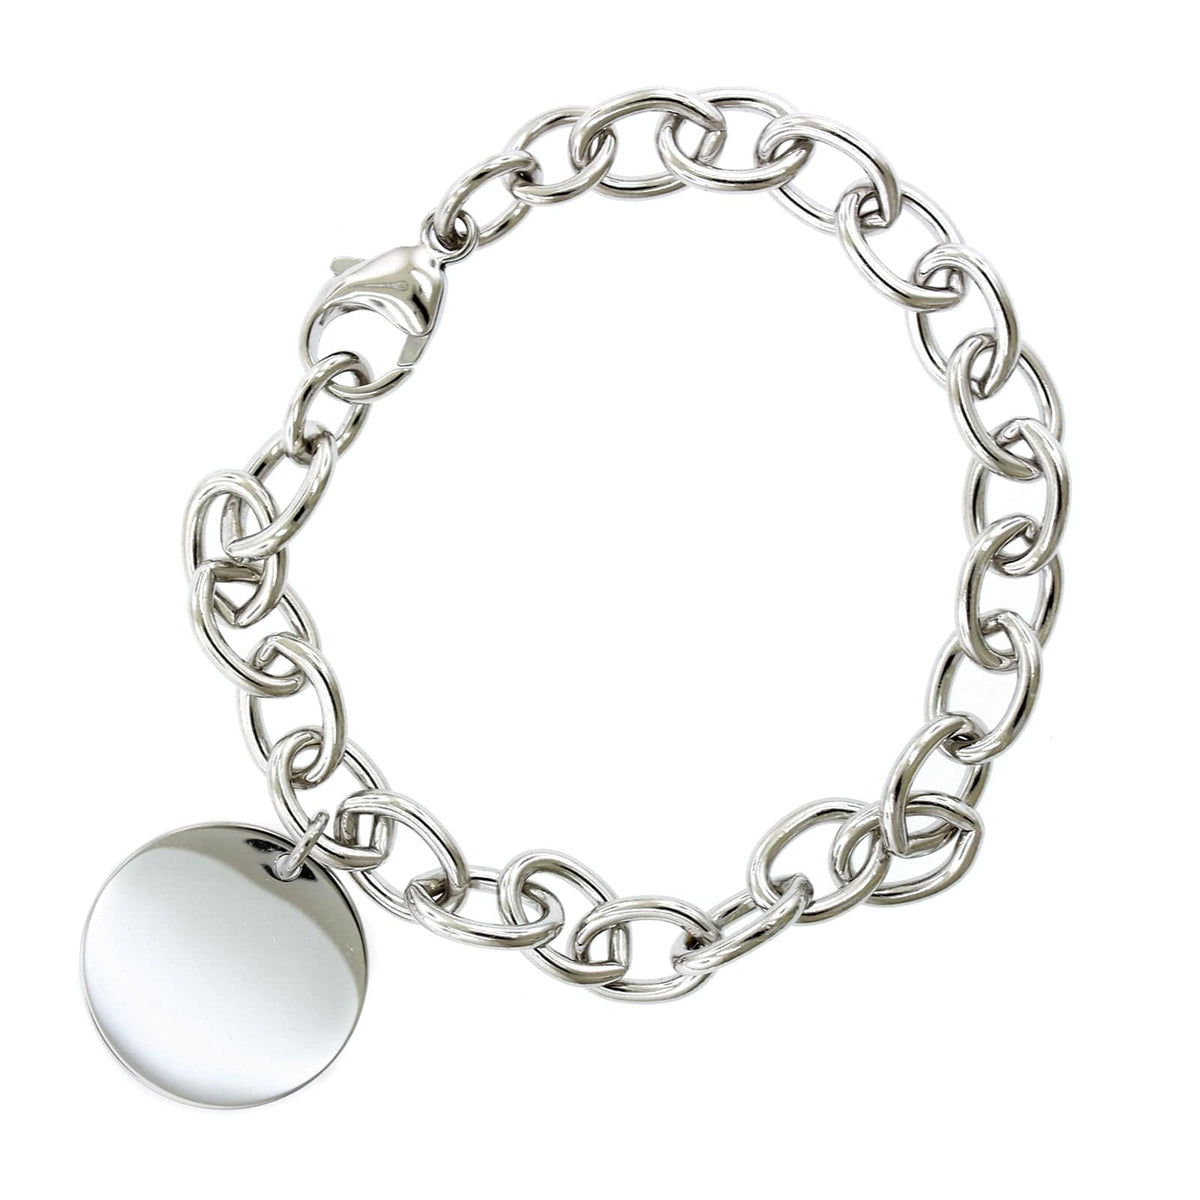 VTG Solid Sterling Silver Twisted Curb Link Toggle Bracelet